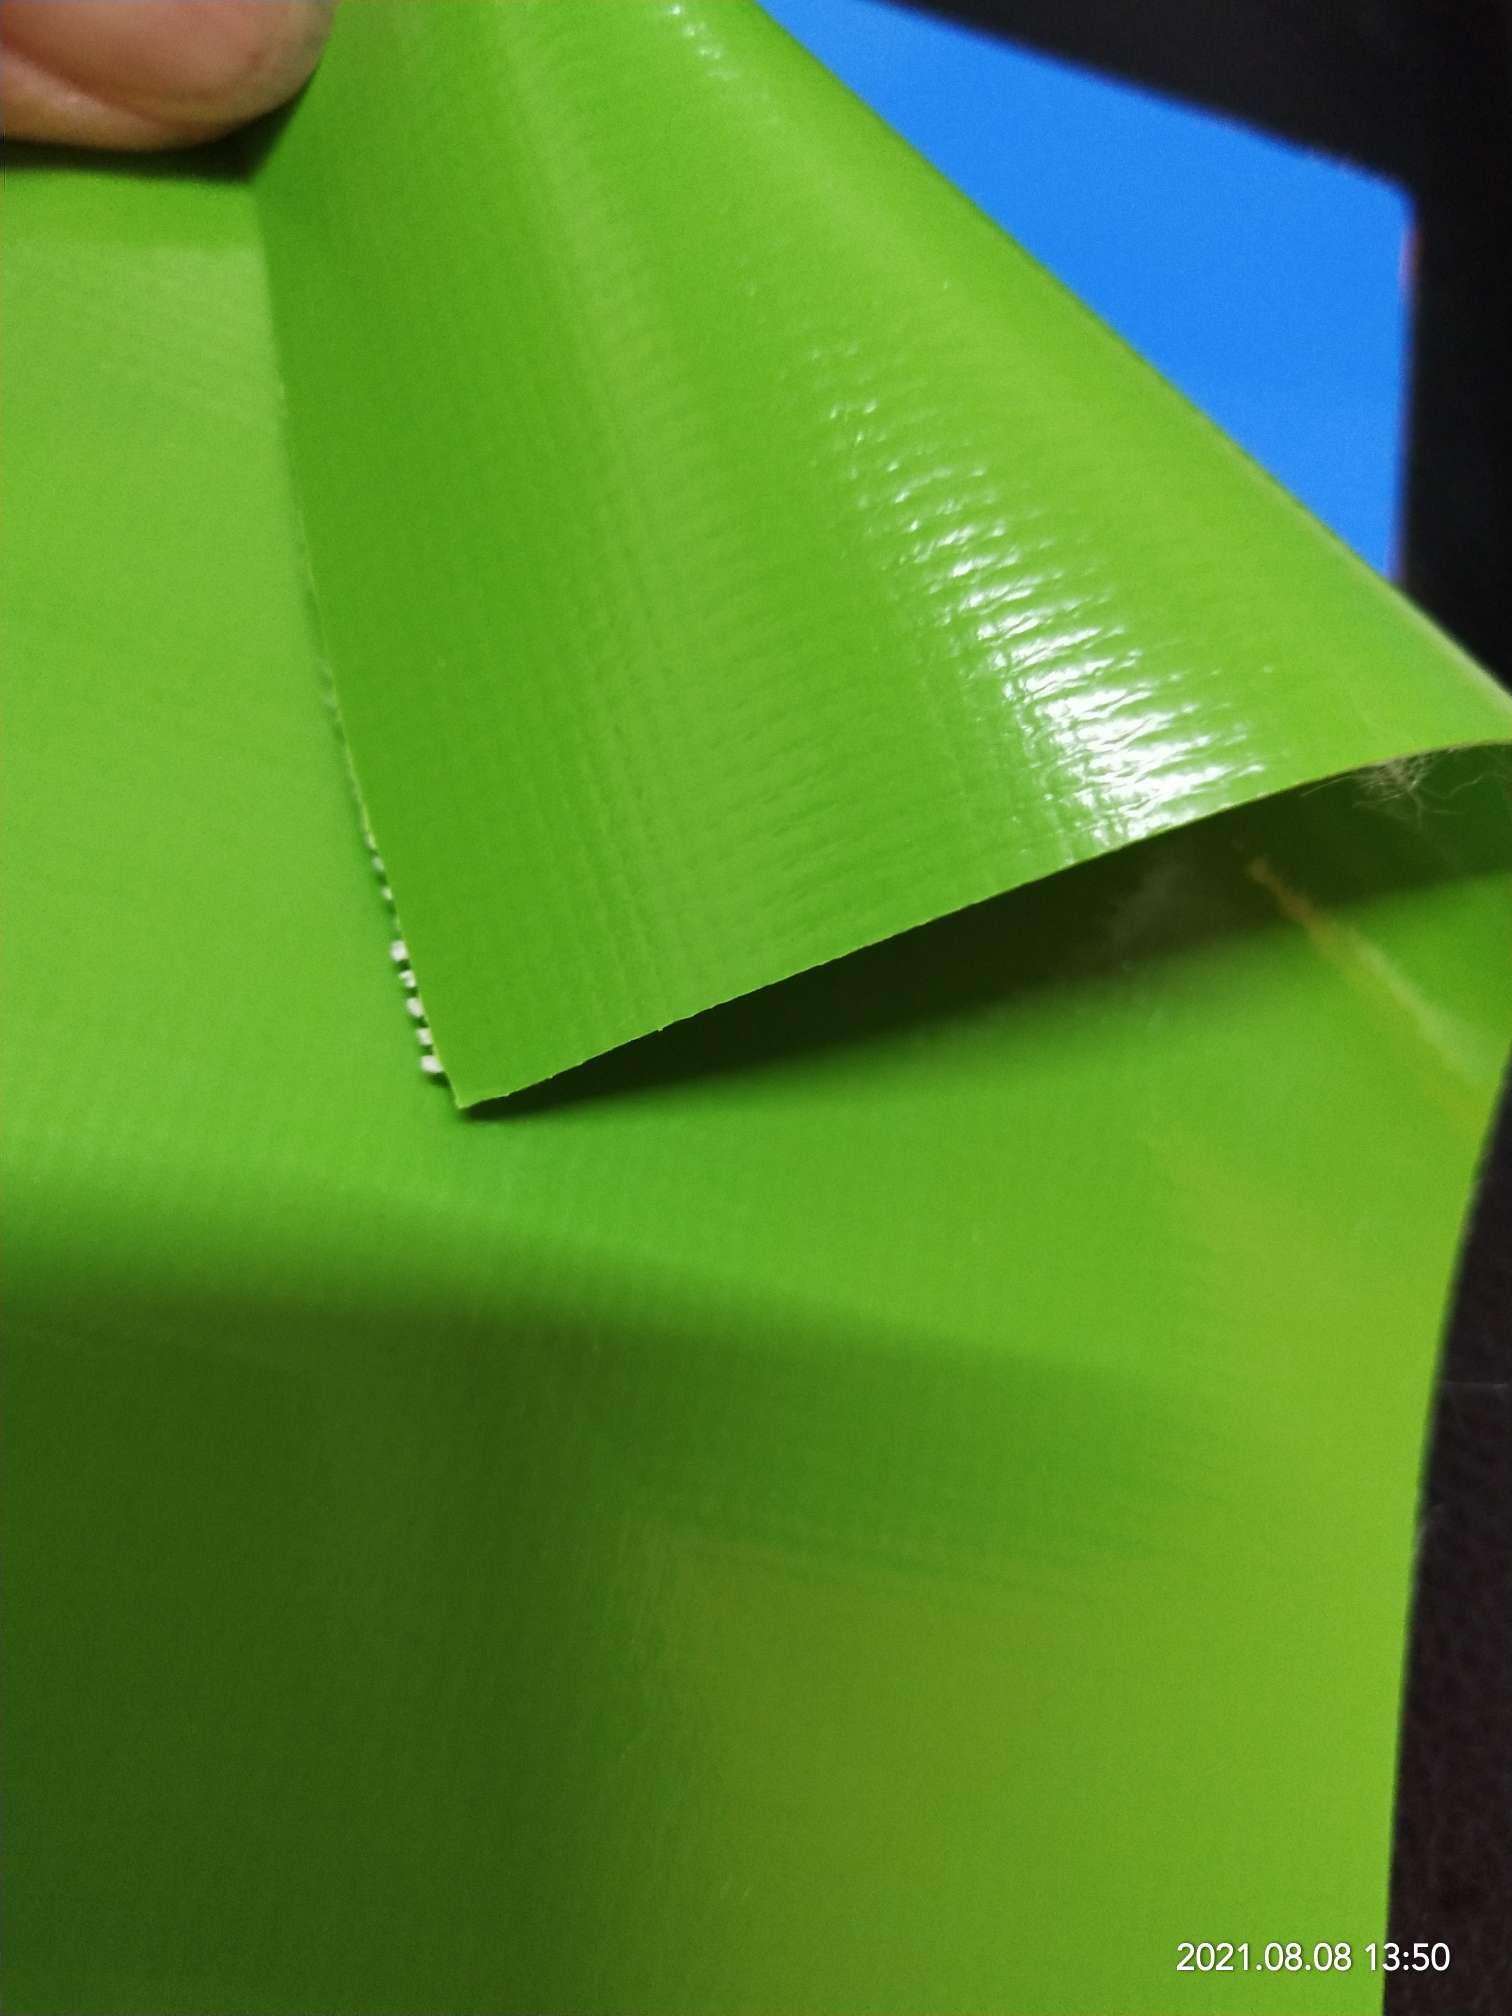 优质光面0.47mm厚浅绿色PVC夹网布  箱包布  机器罩家具罩  体育游乐产品  格种箱包袋专用面料详情图5